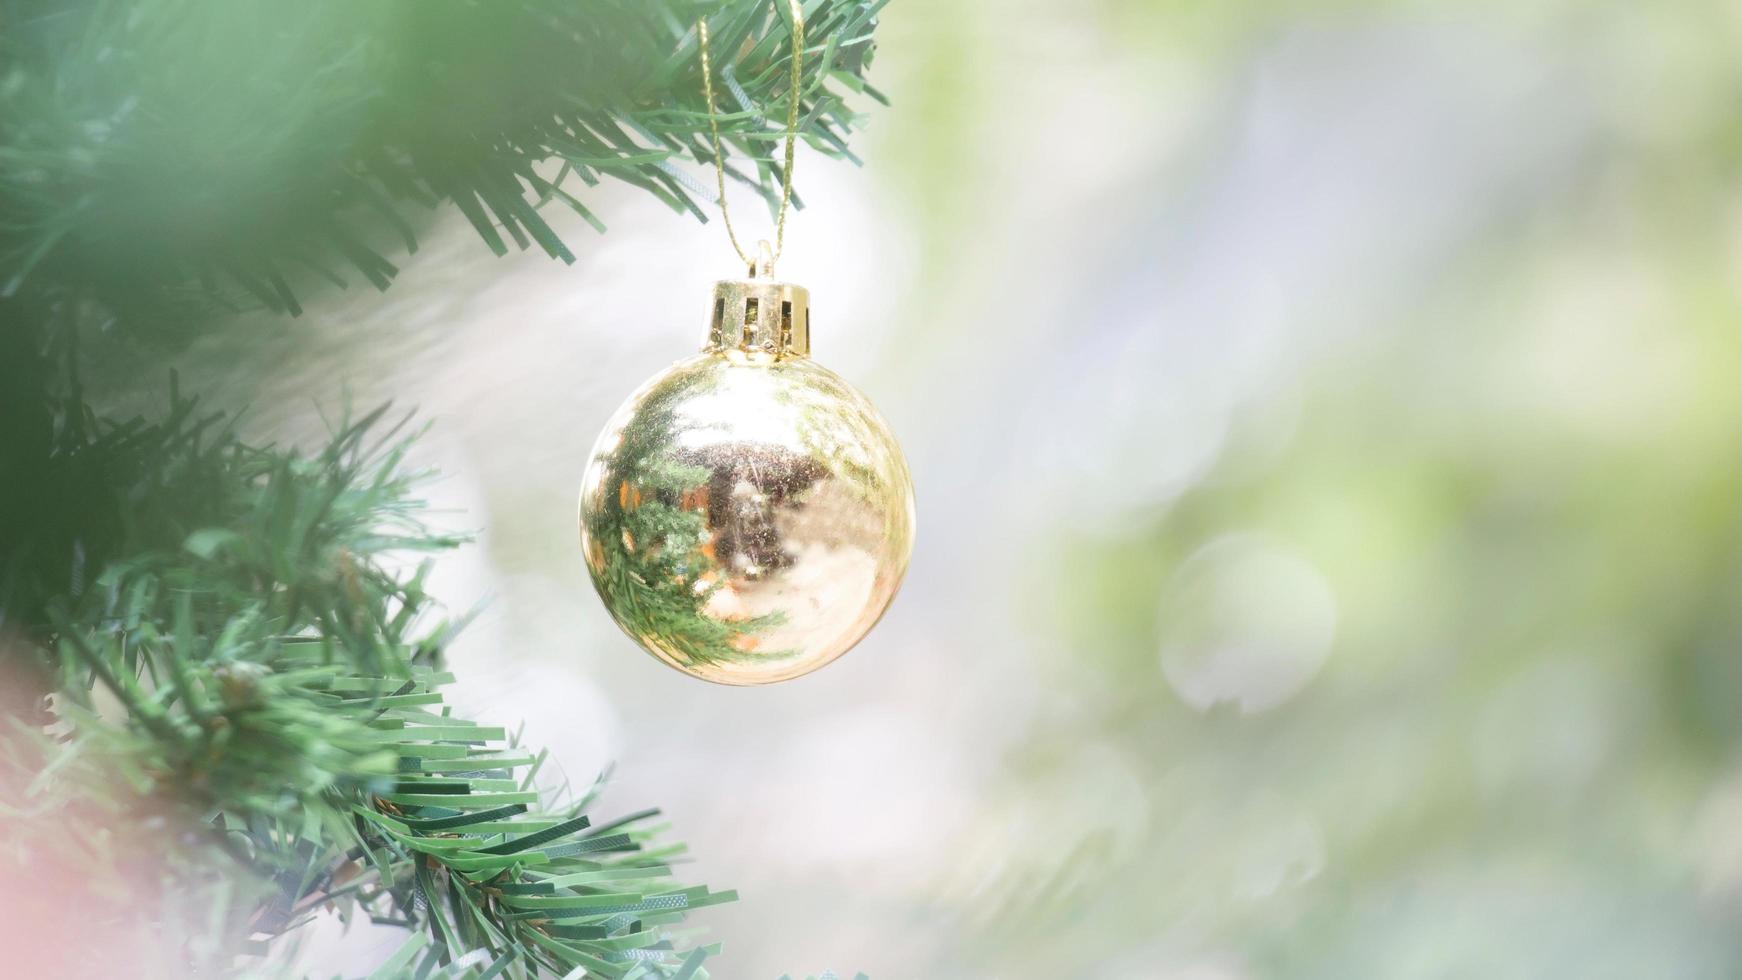 nahaufnahme des goldballs für weihnachts- oder neujahrsdekorationshintergrund foto